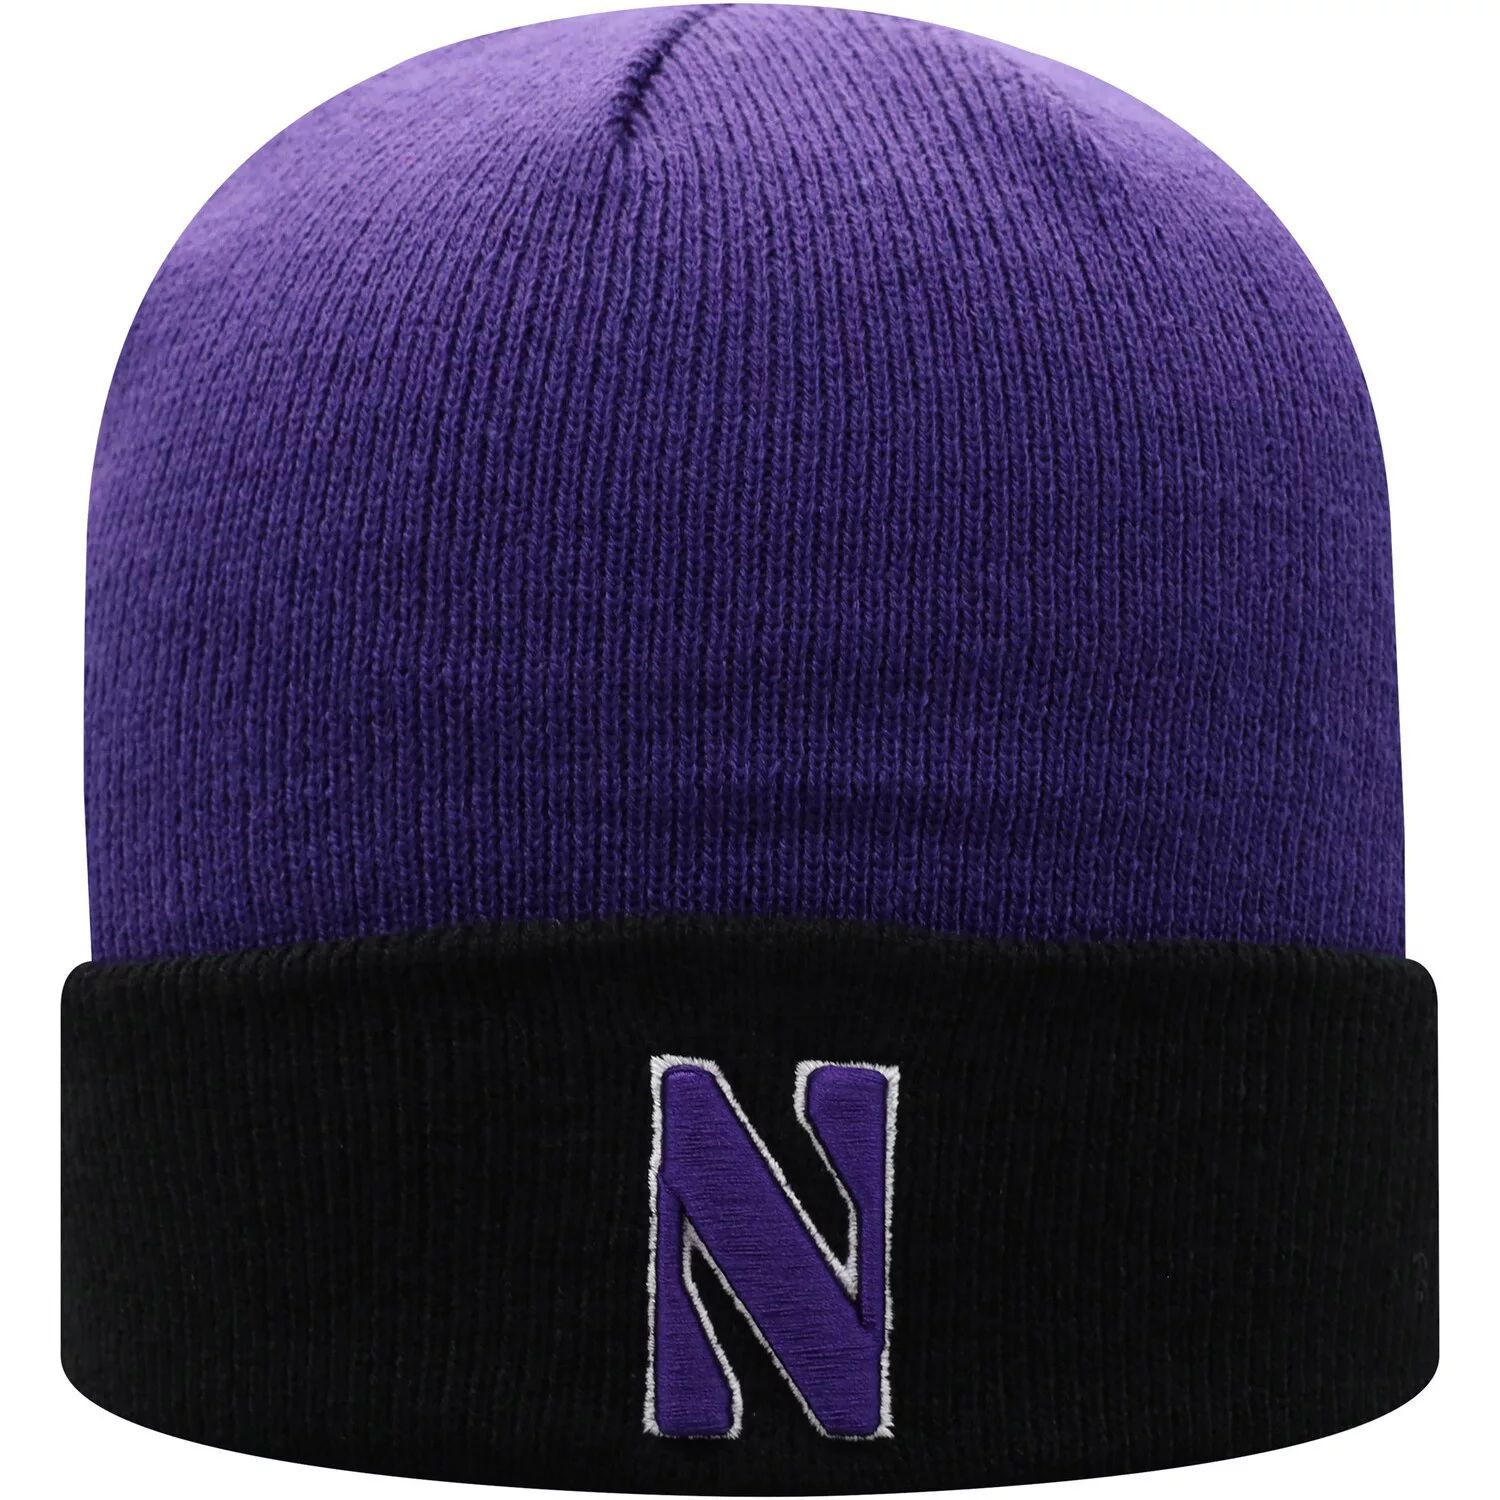 Мужская двухцветная вязаная шапка Top of the World фиолетового/черного цвета Northwestern Wildcats Core с манжетами